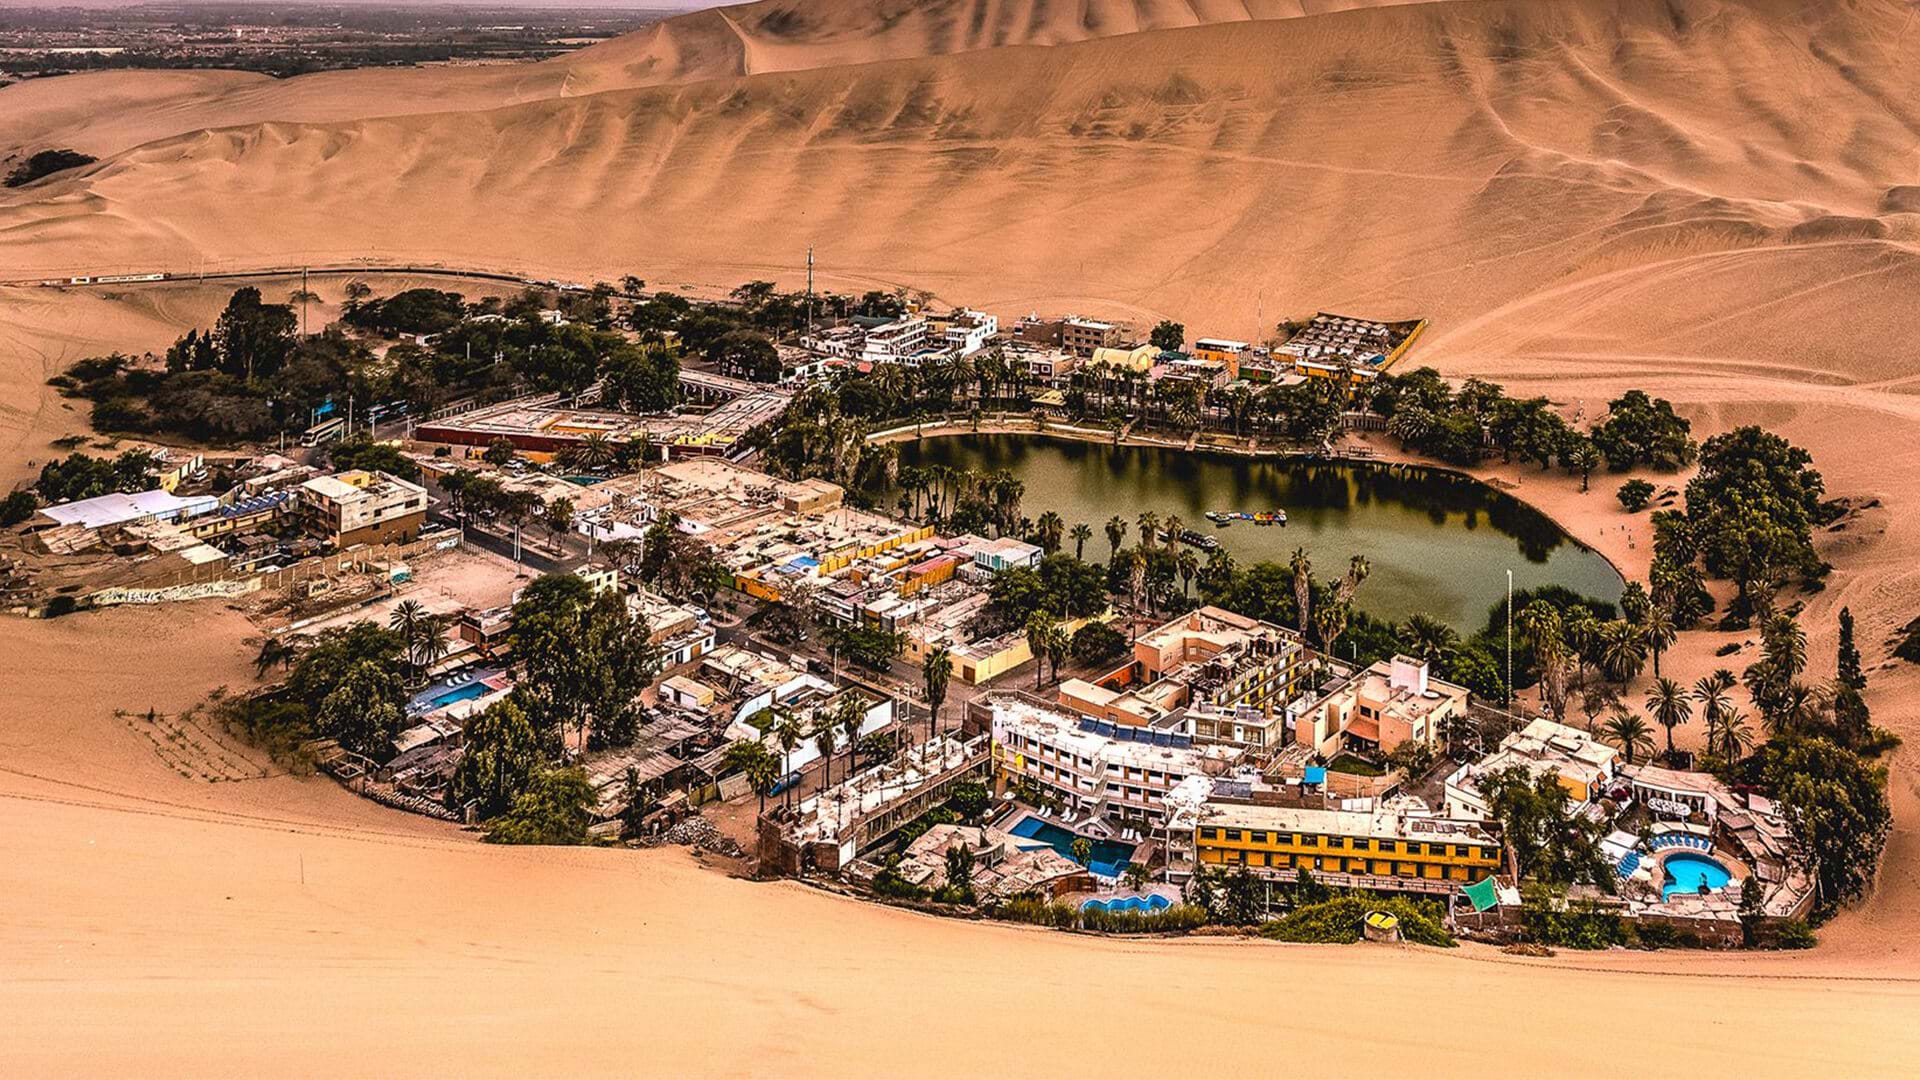 Khám phá ngôi làng ốc đảo tuyệt đẹp hiện lên như cổ tích giữa lòng sa mạc Peru